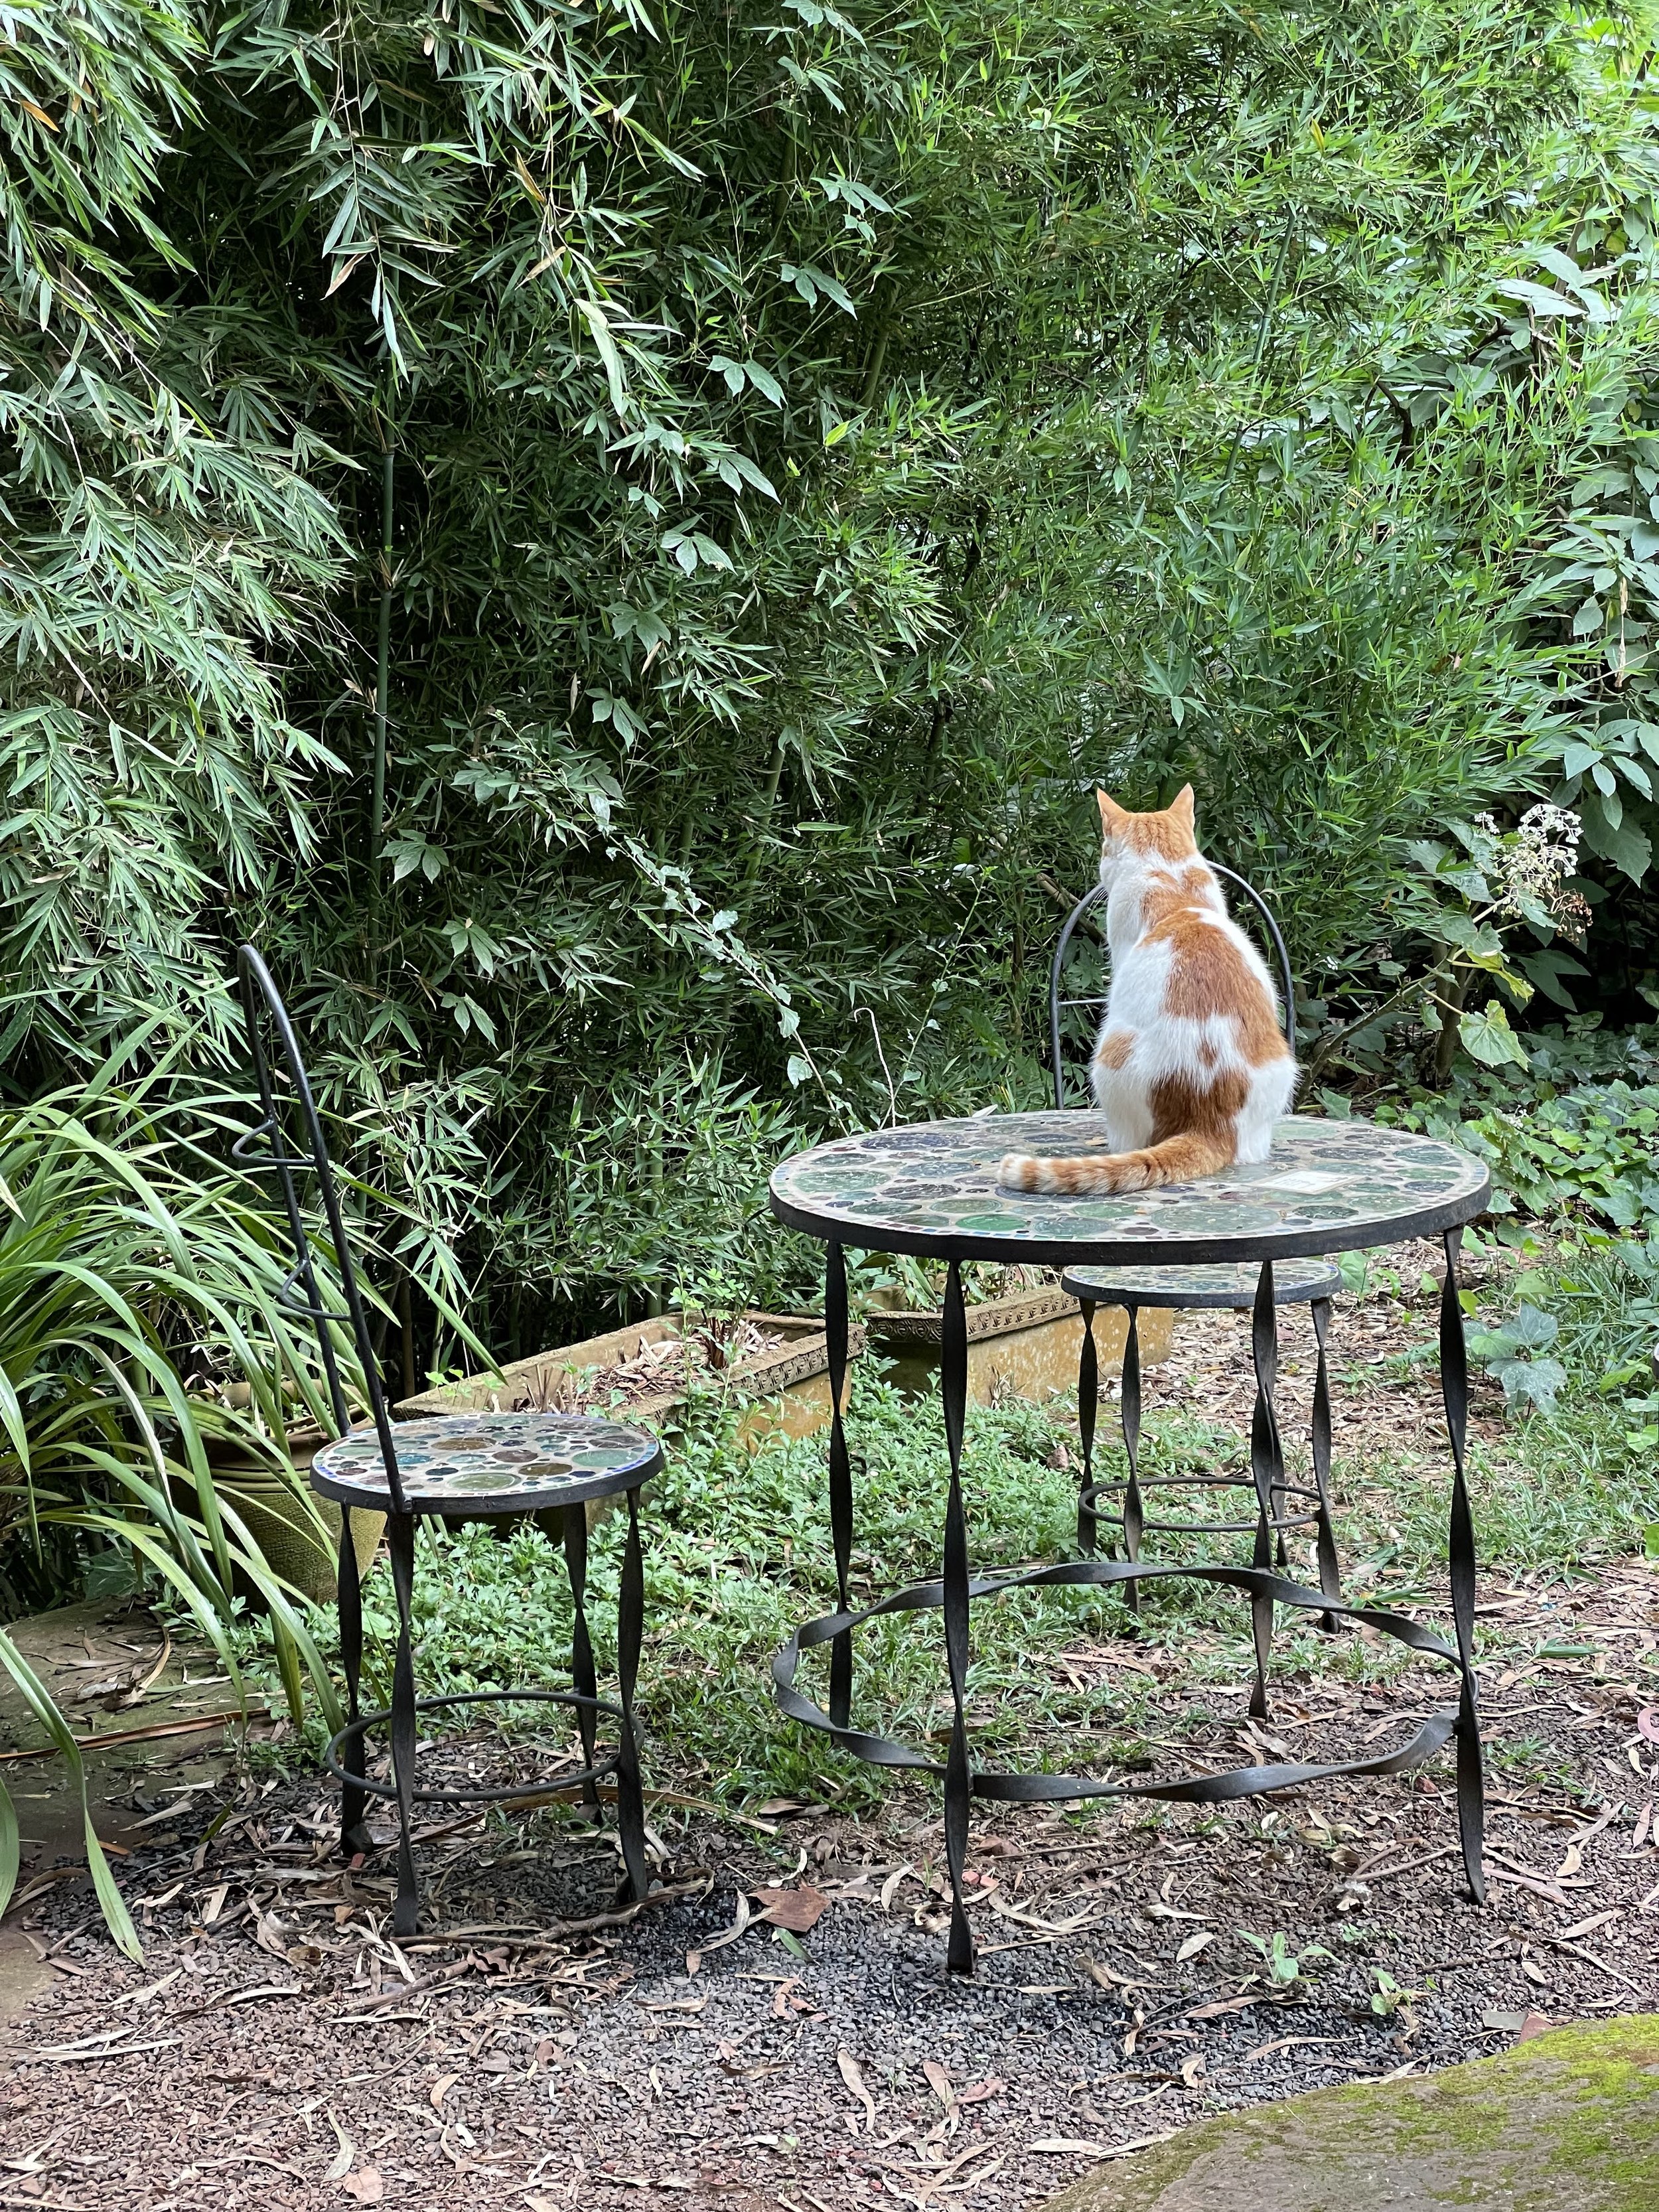 Cat in the Garden